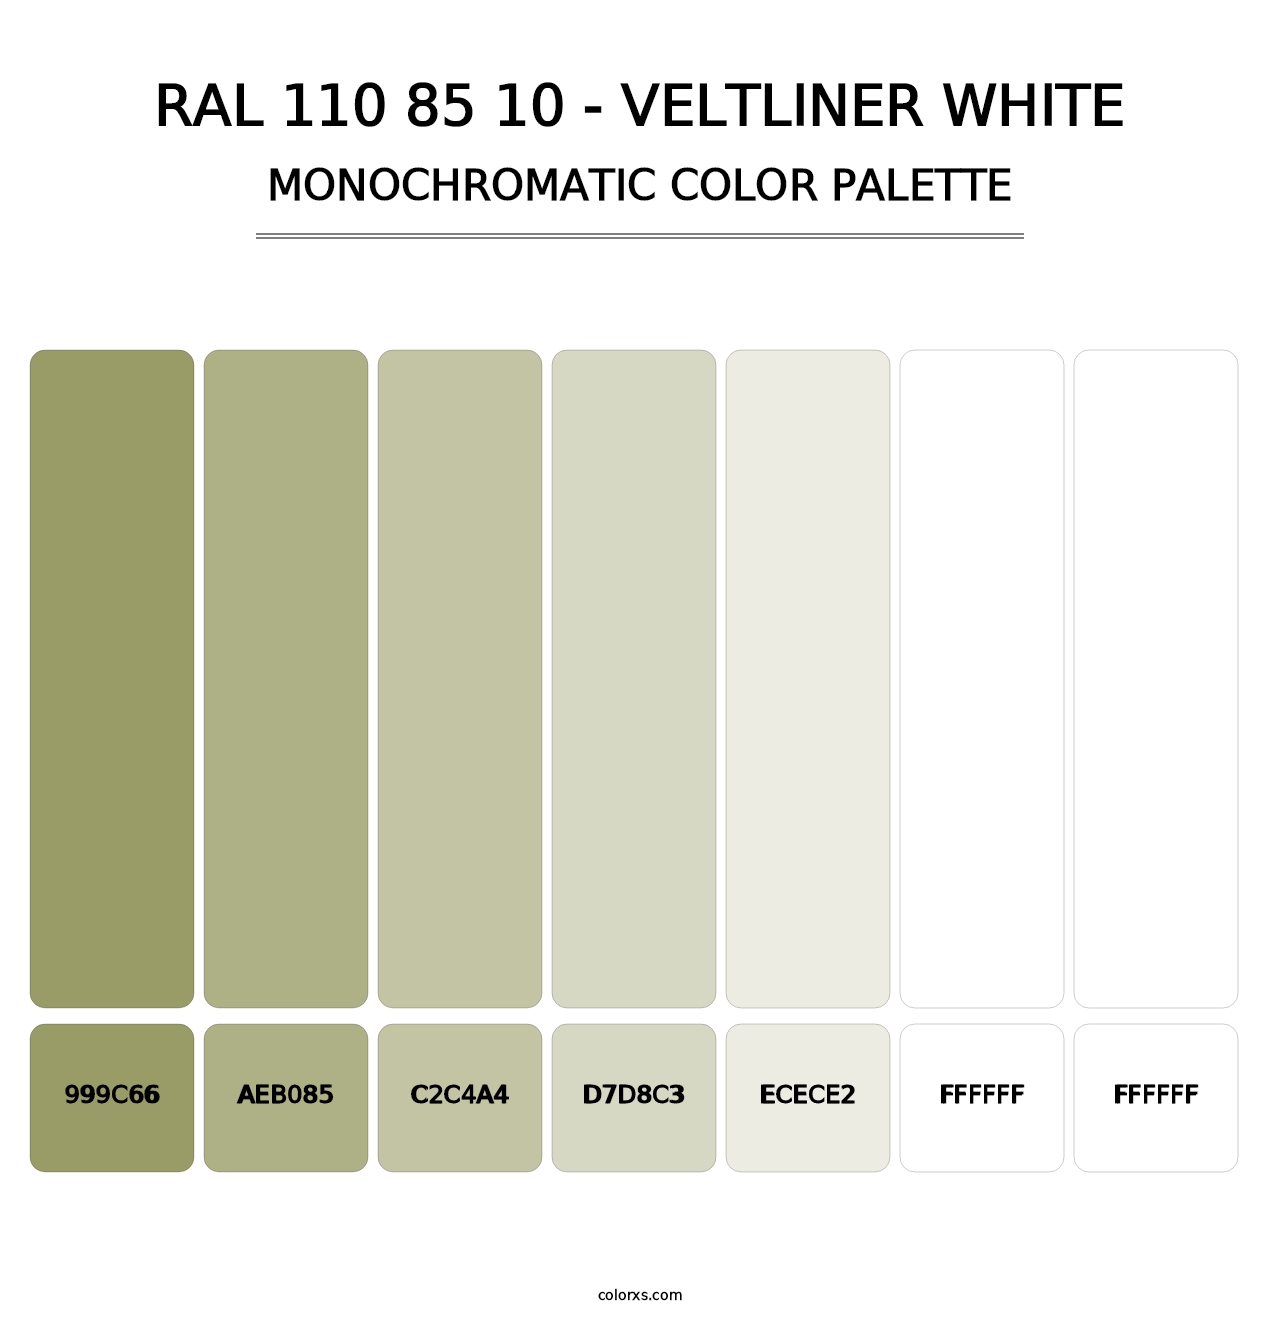 RAL 110 85 10 - Veltliner White - Monochromatic Color Palette